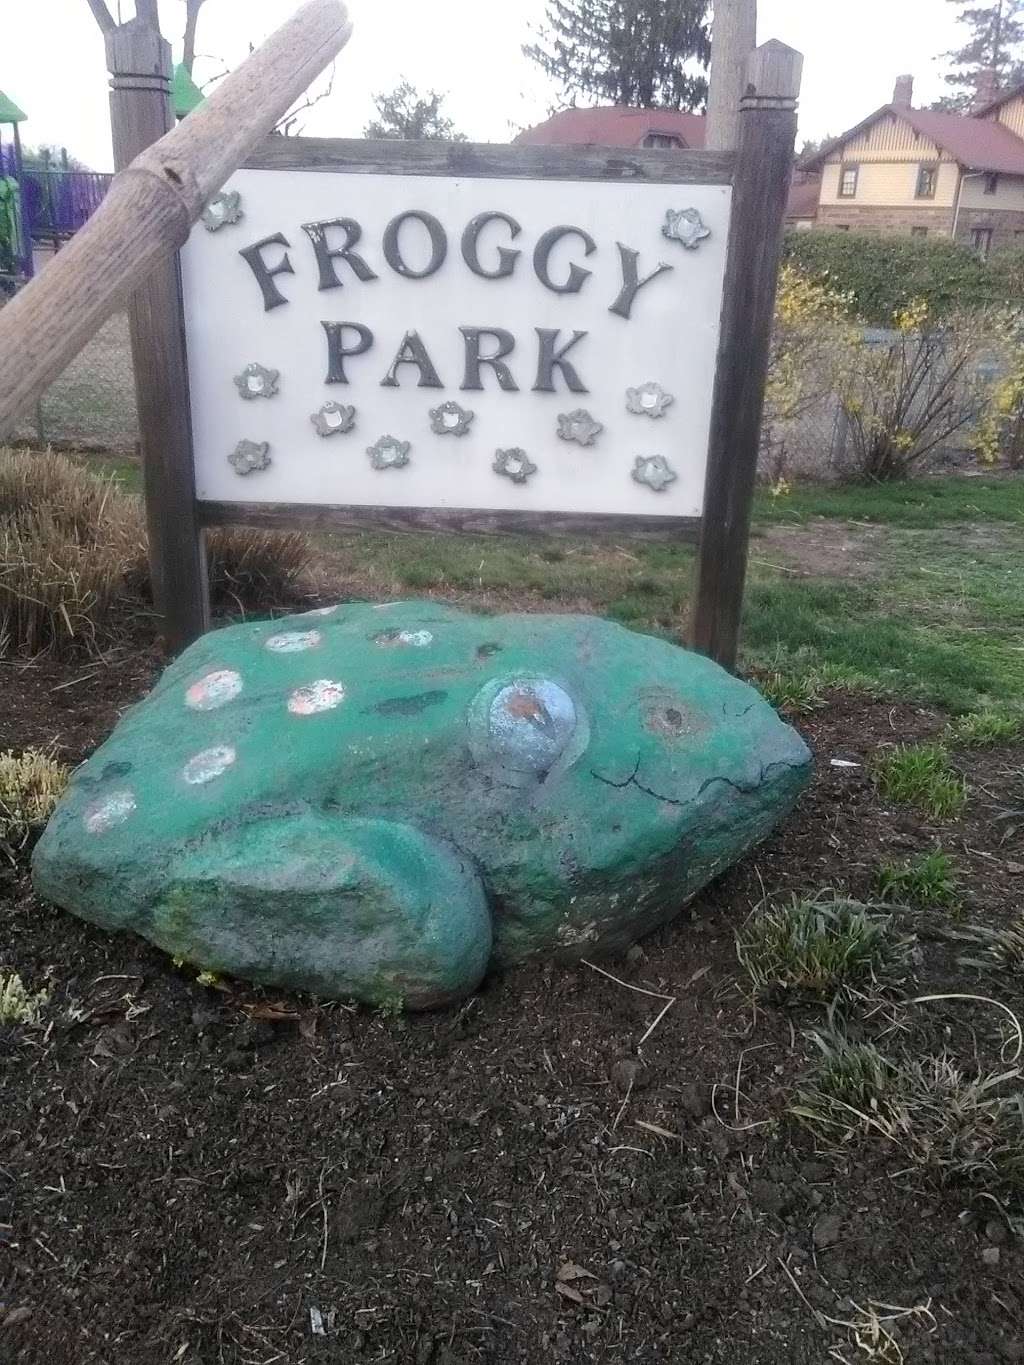 Froggy Park | 1 Foster Rd, Tenafly, NJ 07670